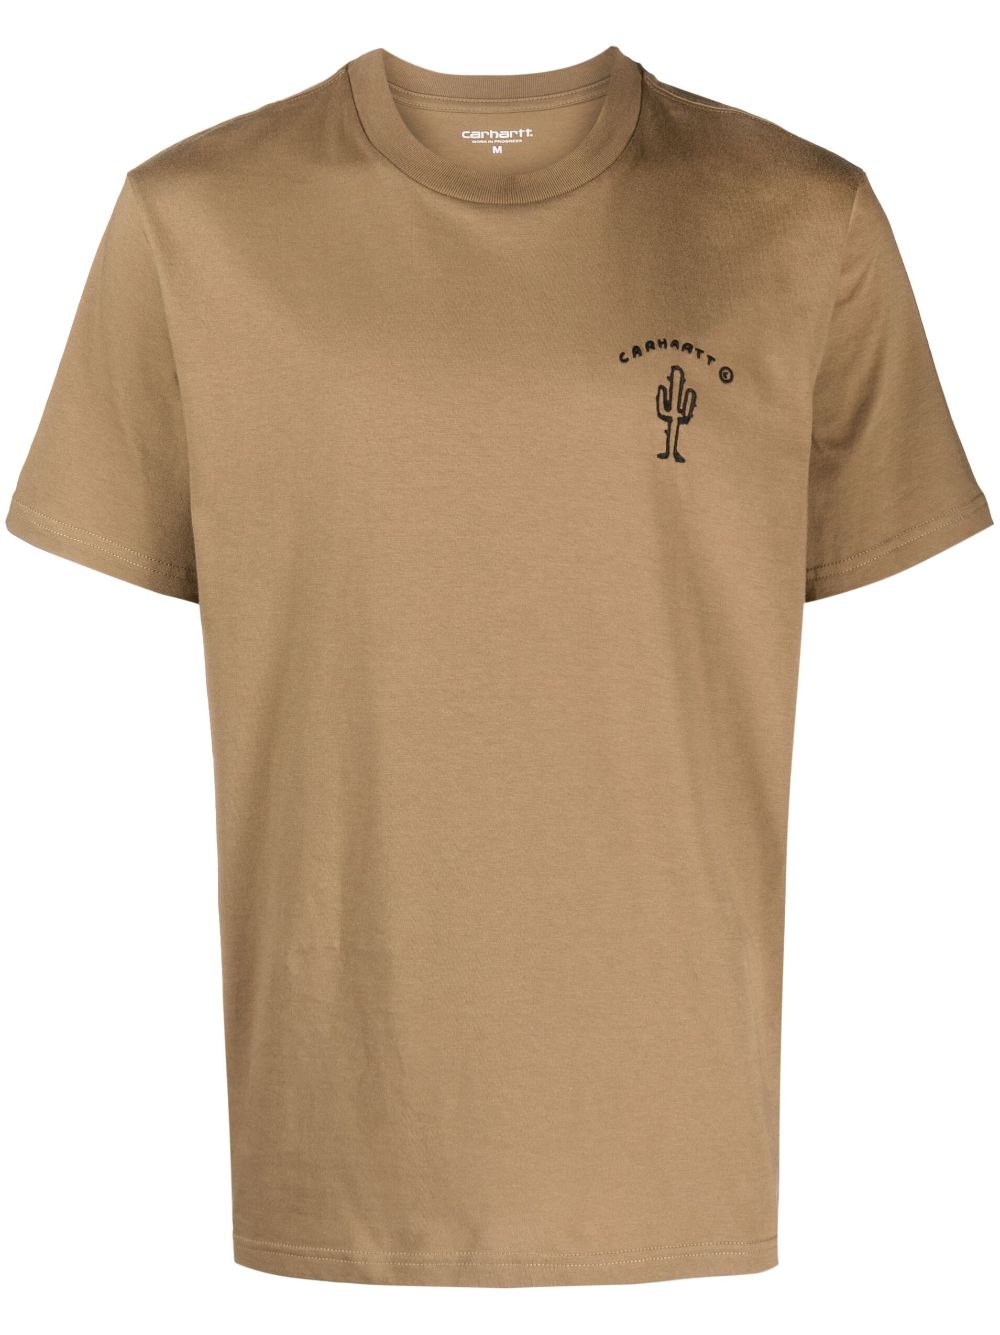 Carhartt New Frontier T-shirt In Brown